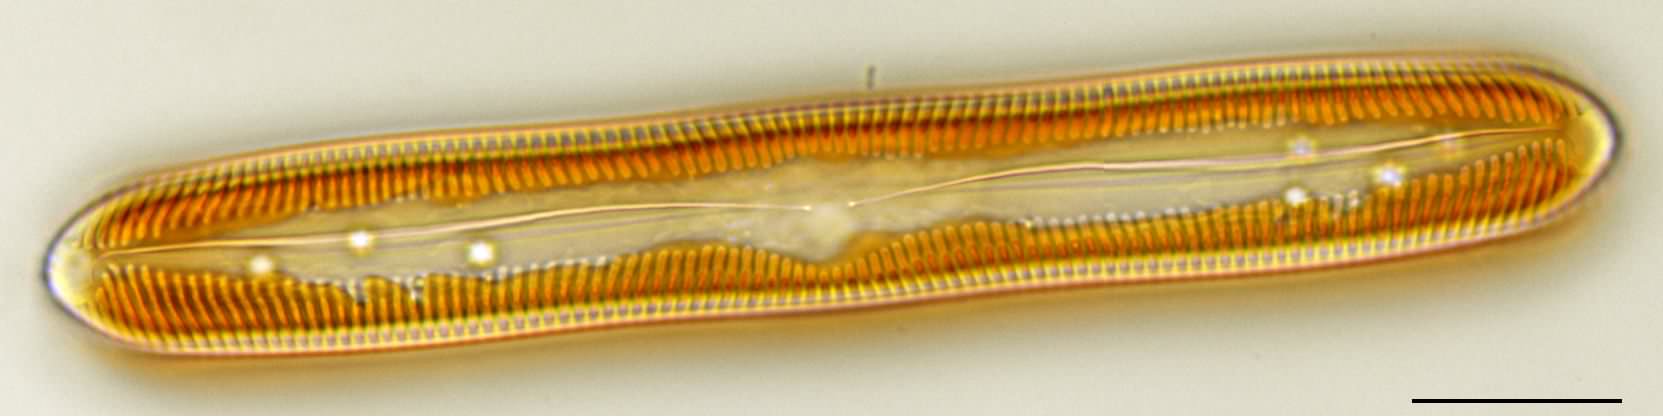 ハネケイソウ（Pinnularia）の画像